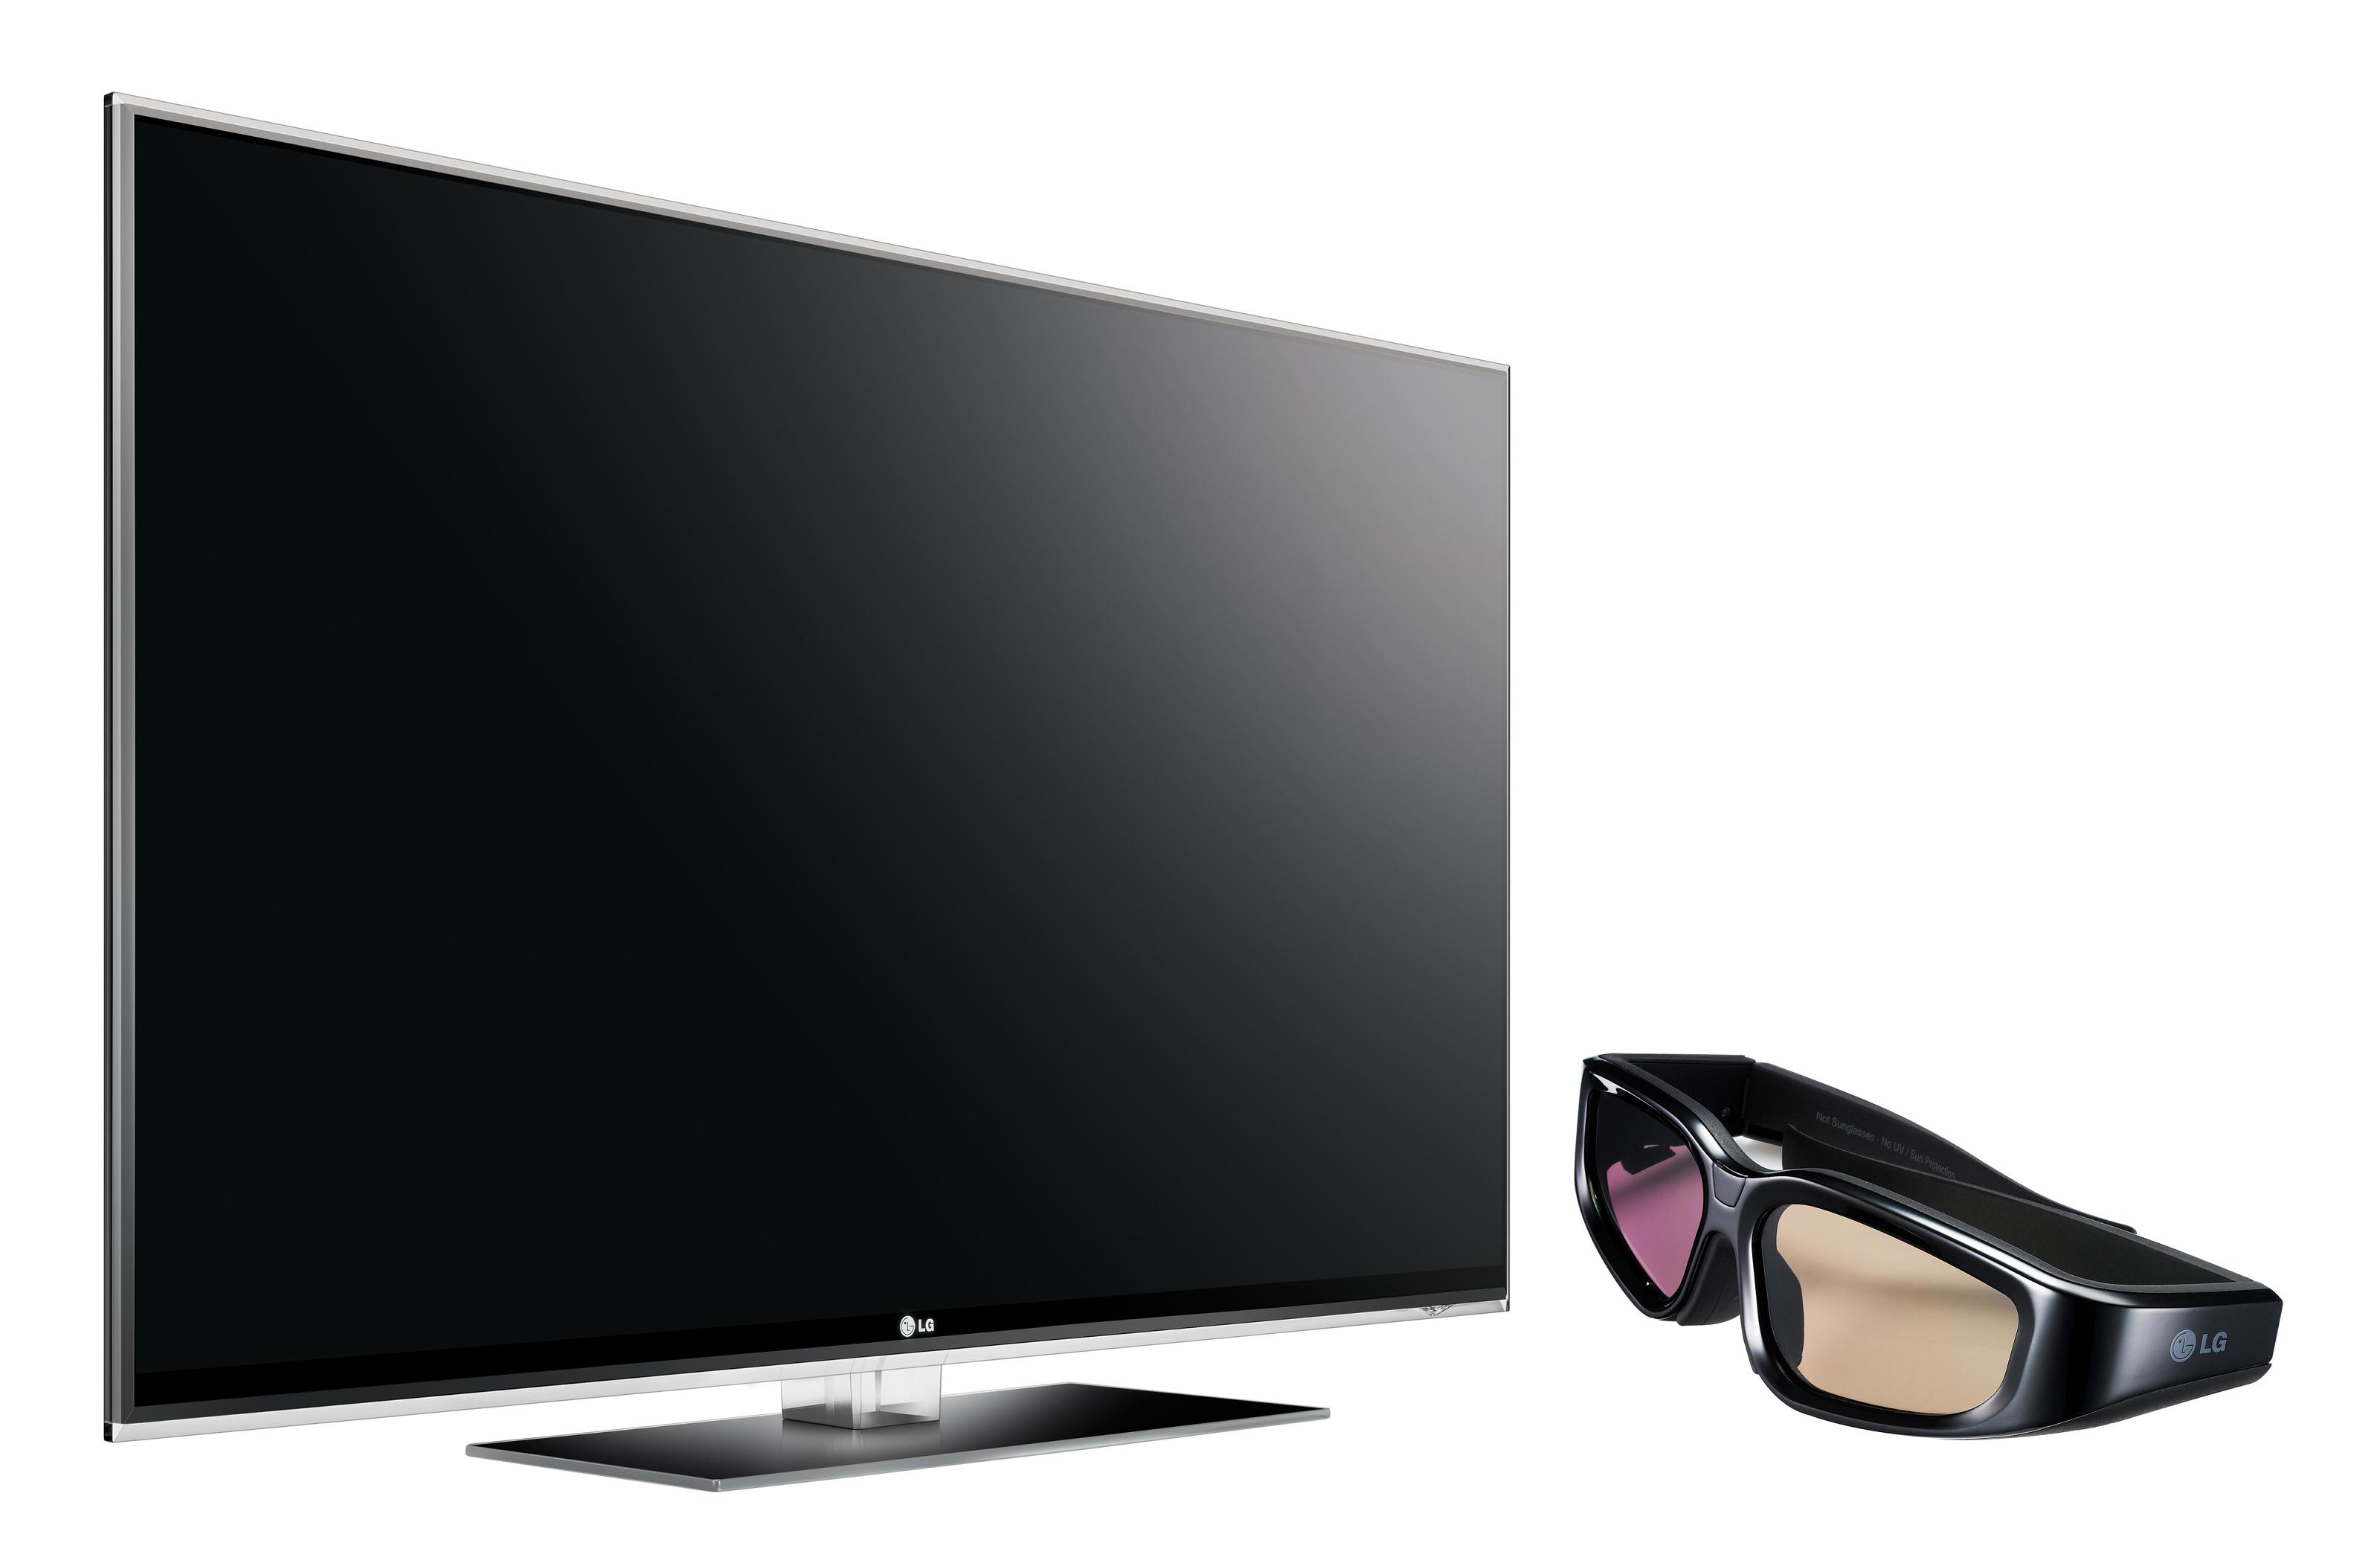 Lg 10 телевизор. LG 47lx9500. Телевизор LG 47lx9500. LG 55 lx9500 телевизор. Телевизор LG LCD led 3d.